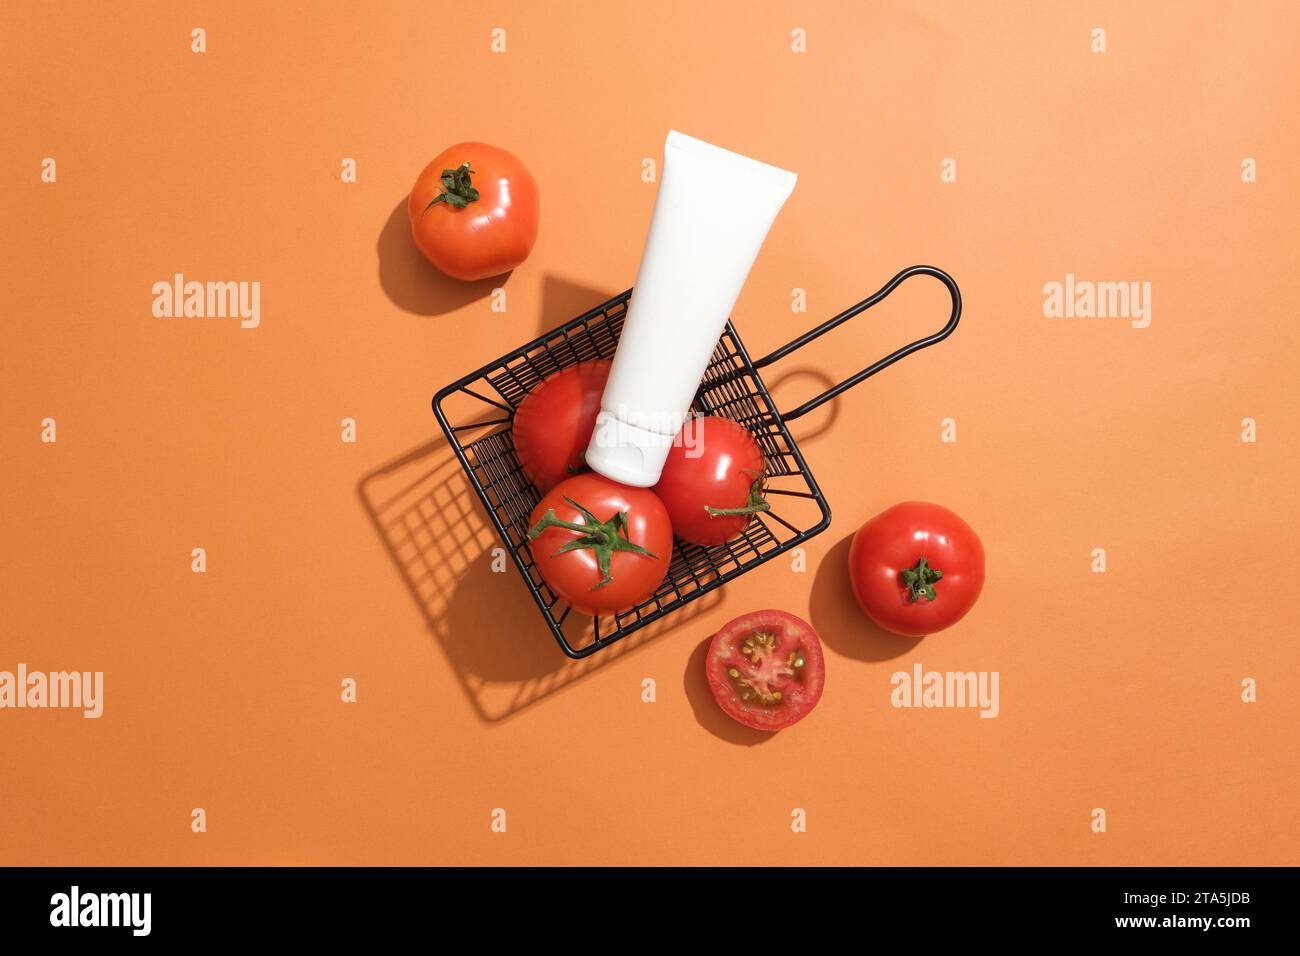 Un panier contenant des tomates fraîches avec une étiquette placée sur le dessus. Fond orange. La teneur en complexe de vitamine B présente dans les tomates aide à combattre t Banque D'Images